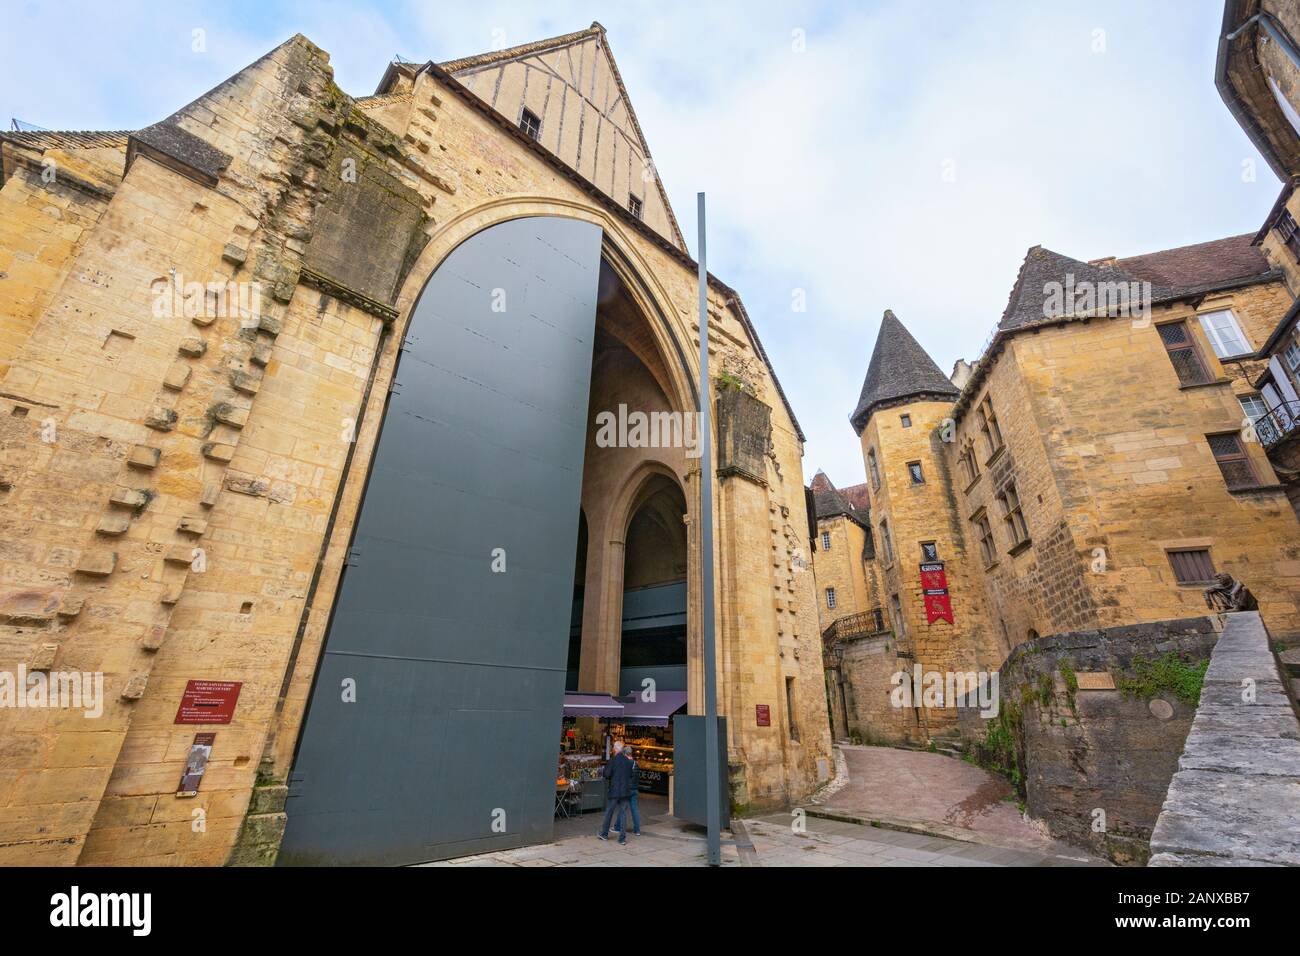 France, Dordogne, Sarlat-la-Caneda, Place J. Boissarie,  Sainte-Marie church 14C, now a covered market, sculpture Le Badaud 'The Onlooker,' Stock Photo